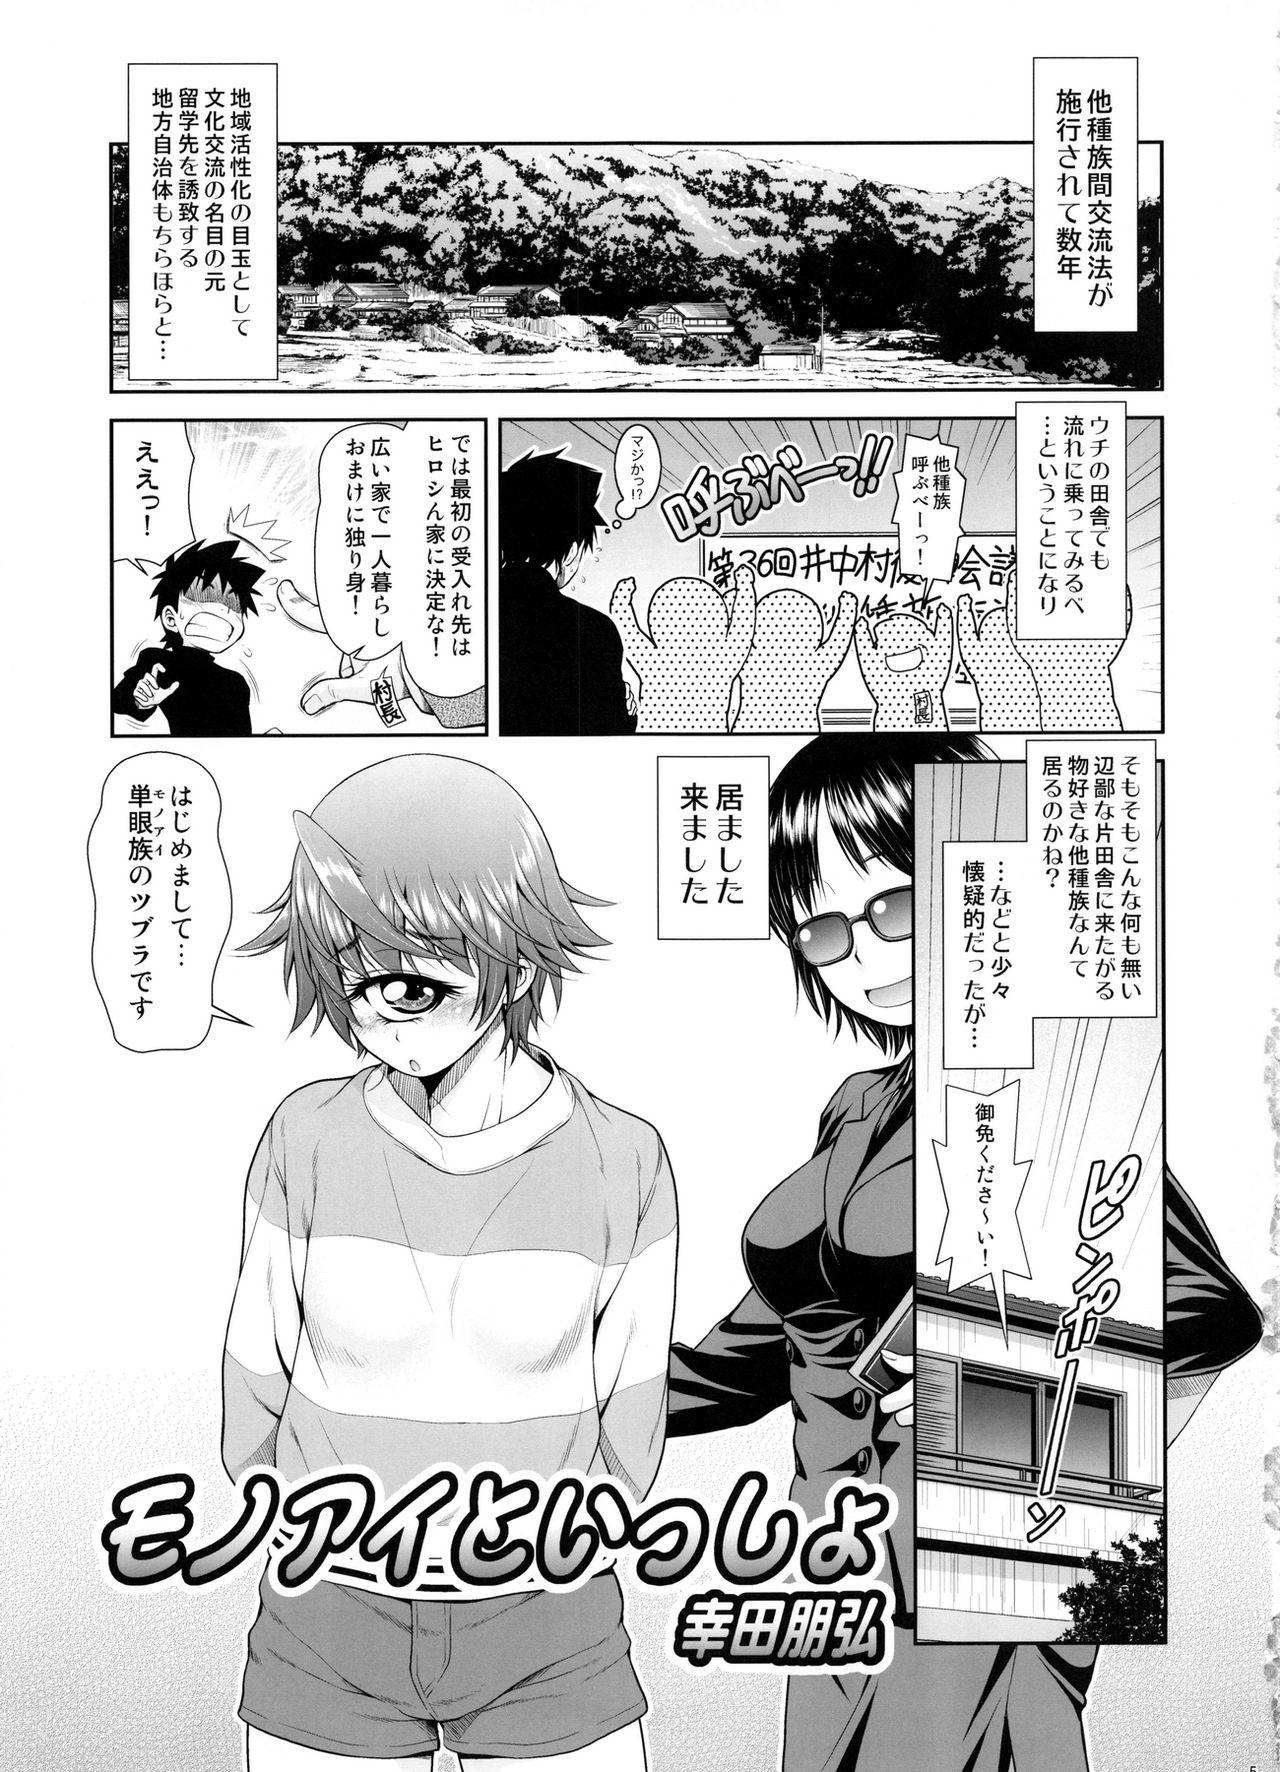 Outdoor Monmusu Biyori - Monster musume no iru nichijou Consolo - Page 4